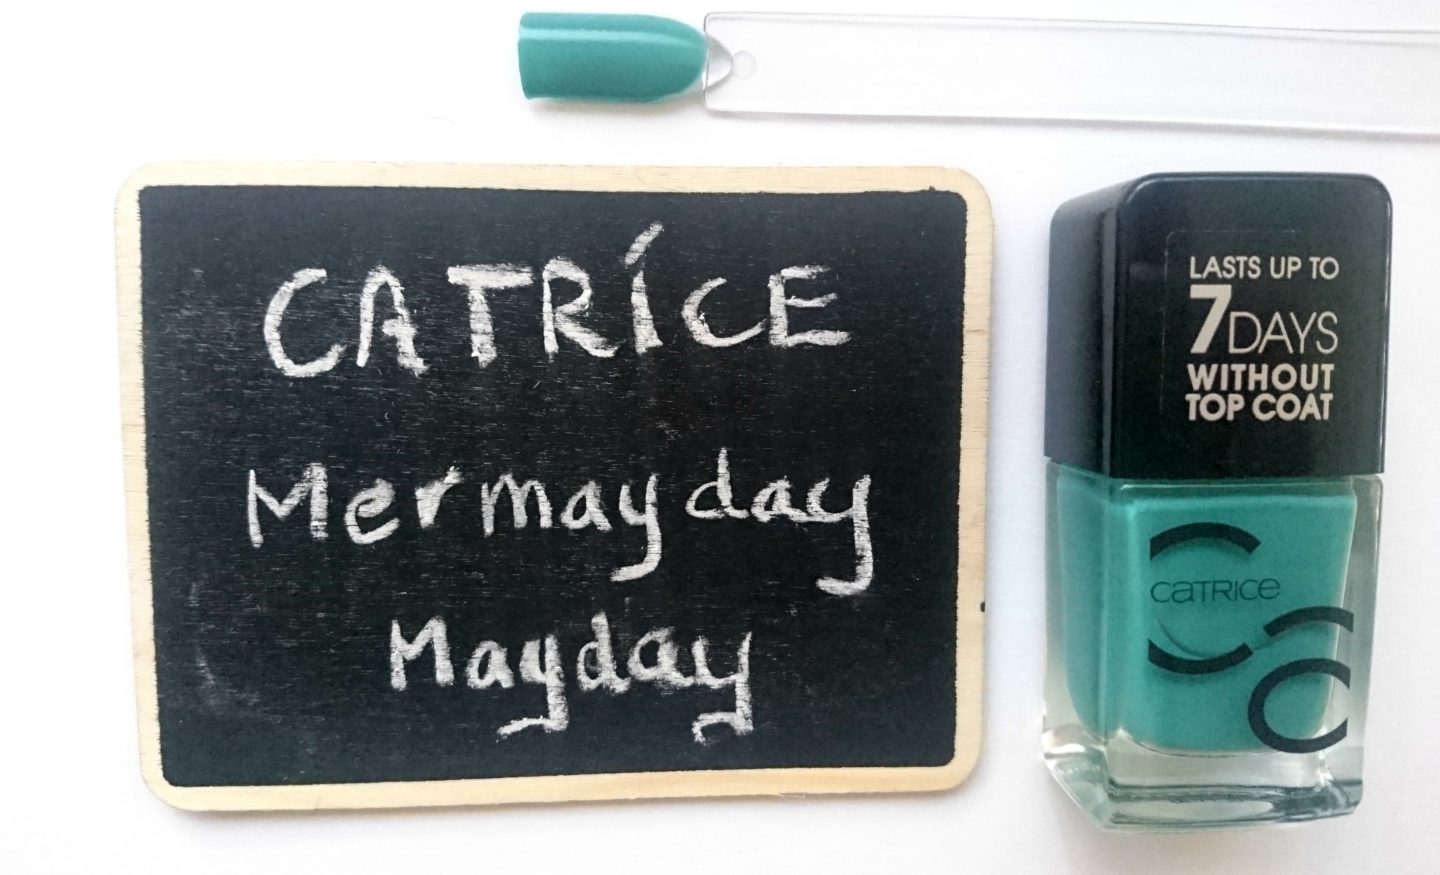 catrice mermayday mayday